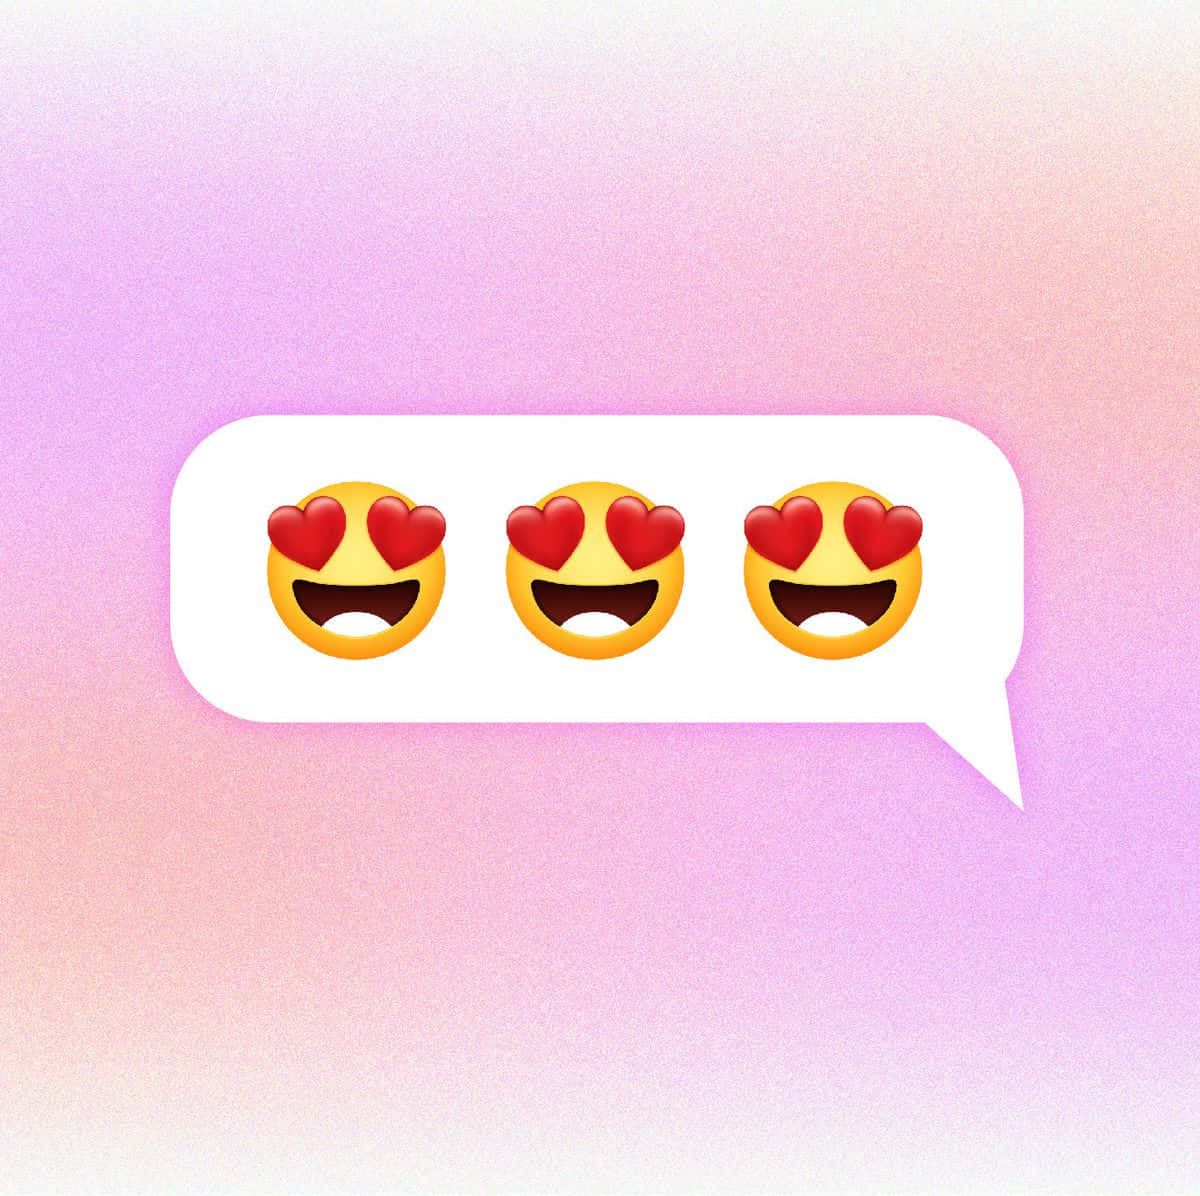 Imagende Burbuja De Diálogo Con Emoji De Ojos De Corazón